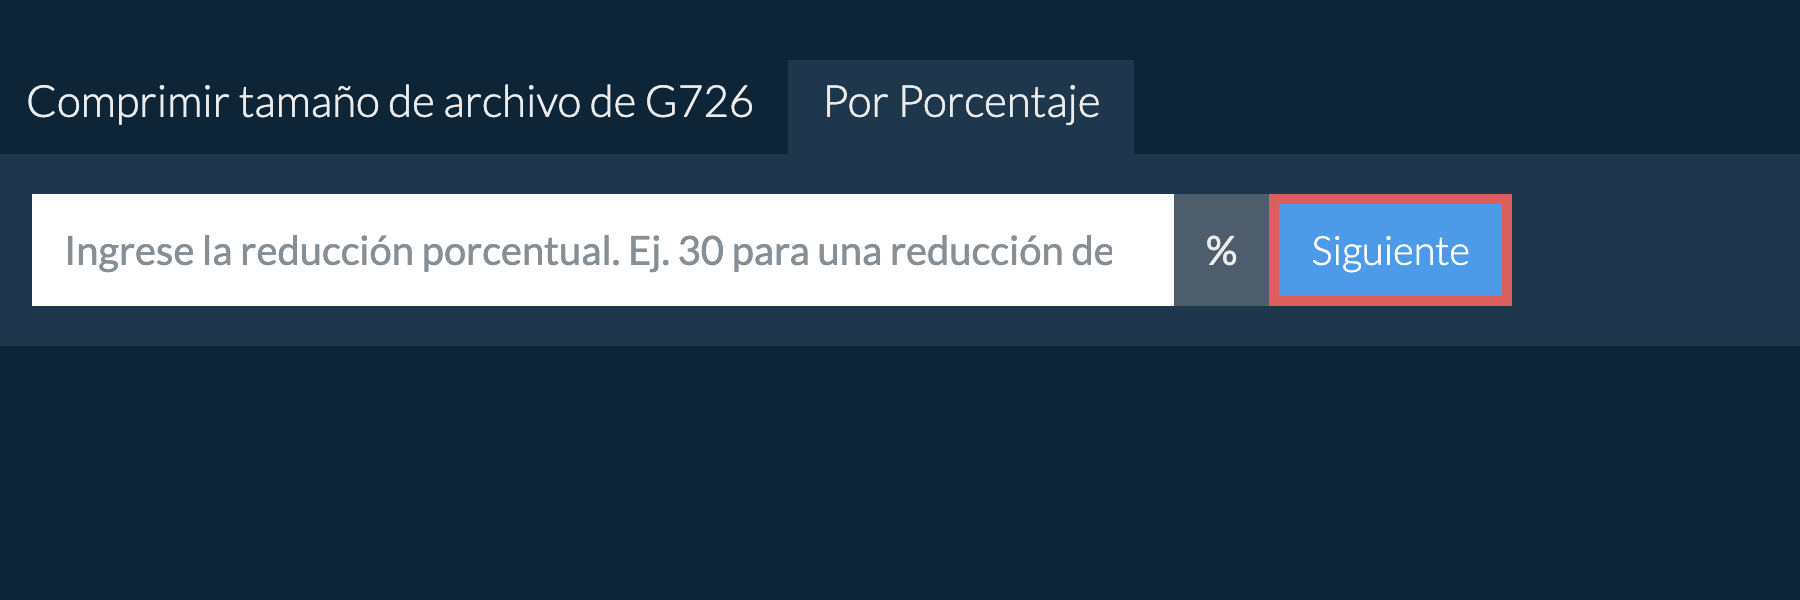 Reducir g726 por porcentaje